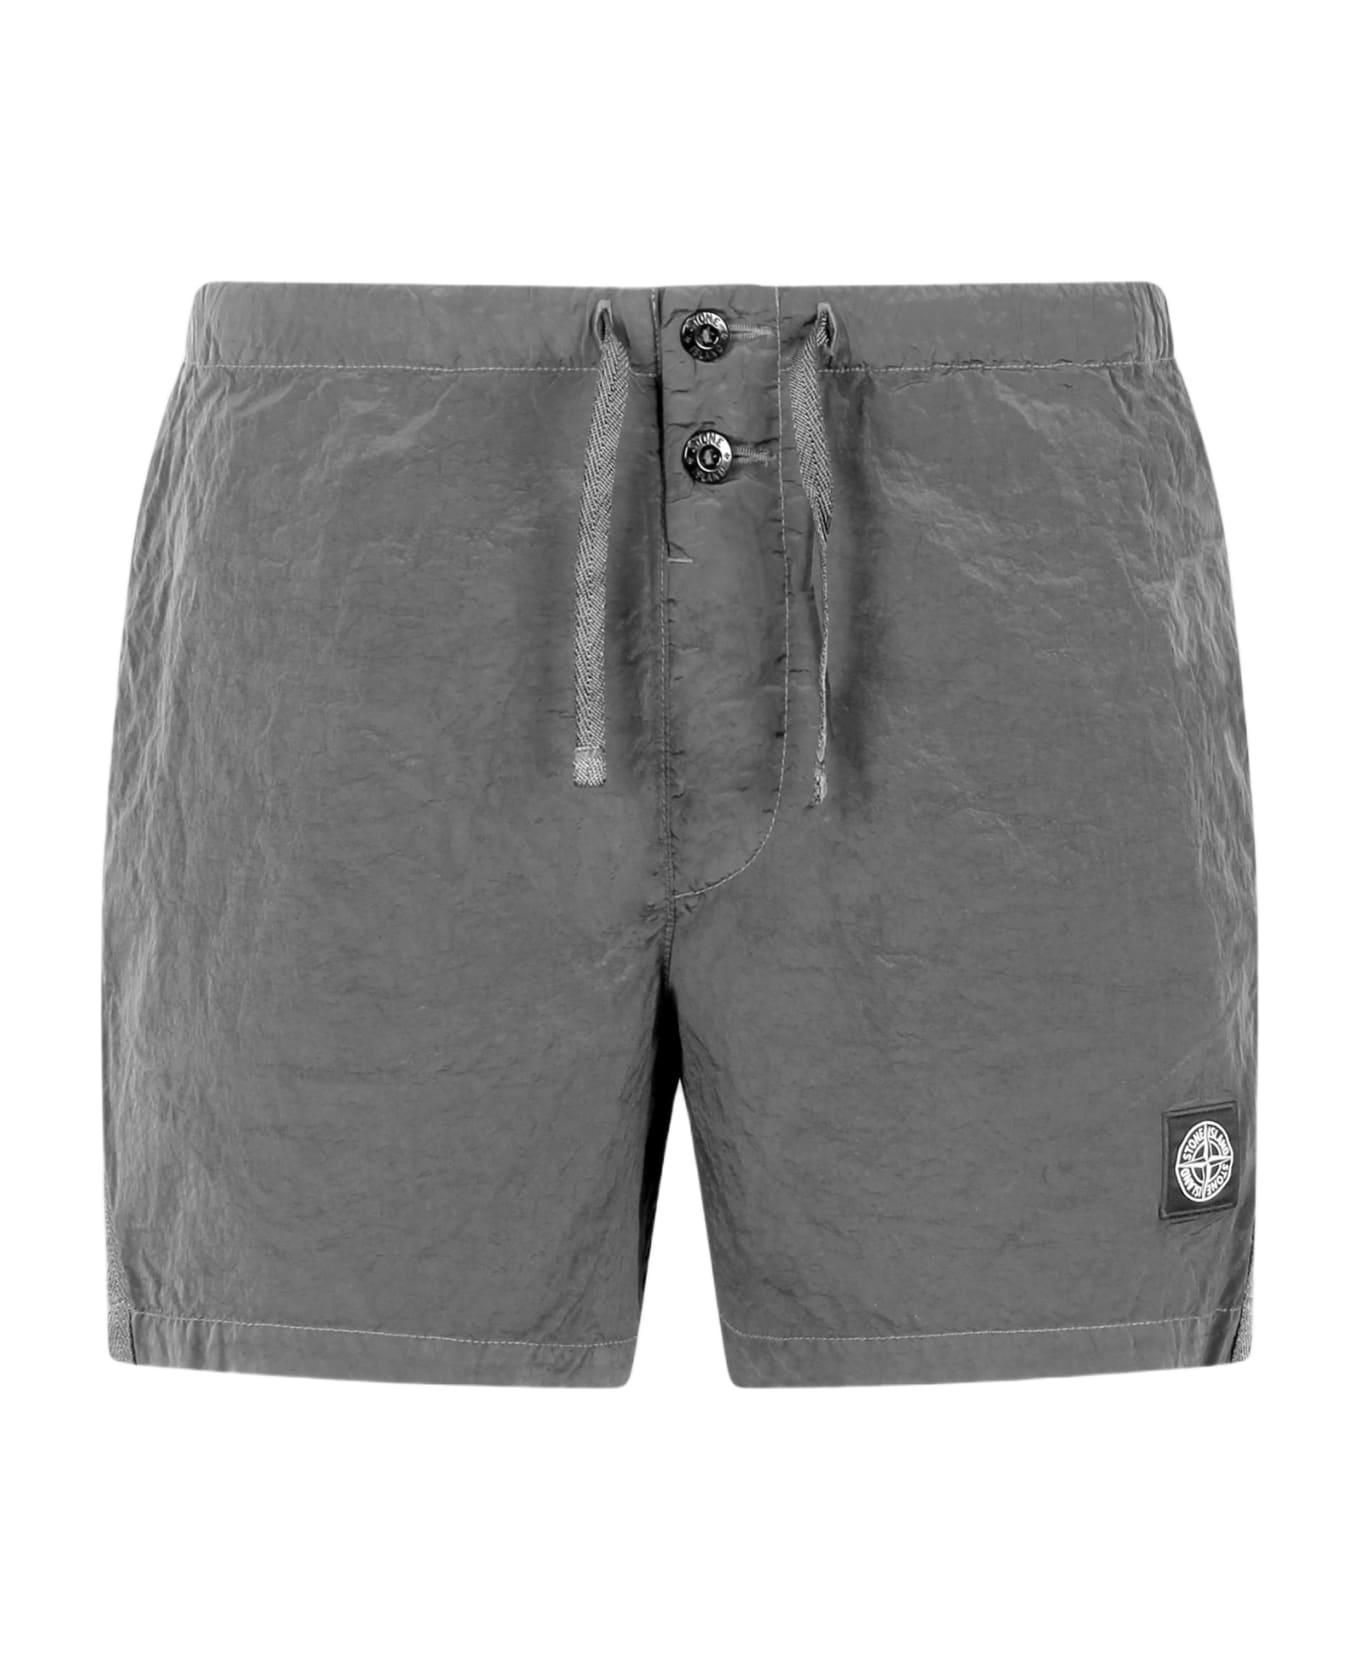 Stone Island Logo Drawstring Shorts - Grey スイムトランクス